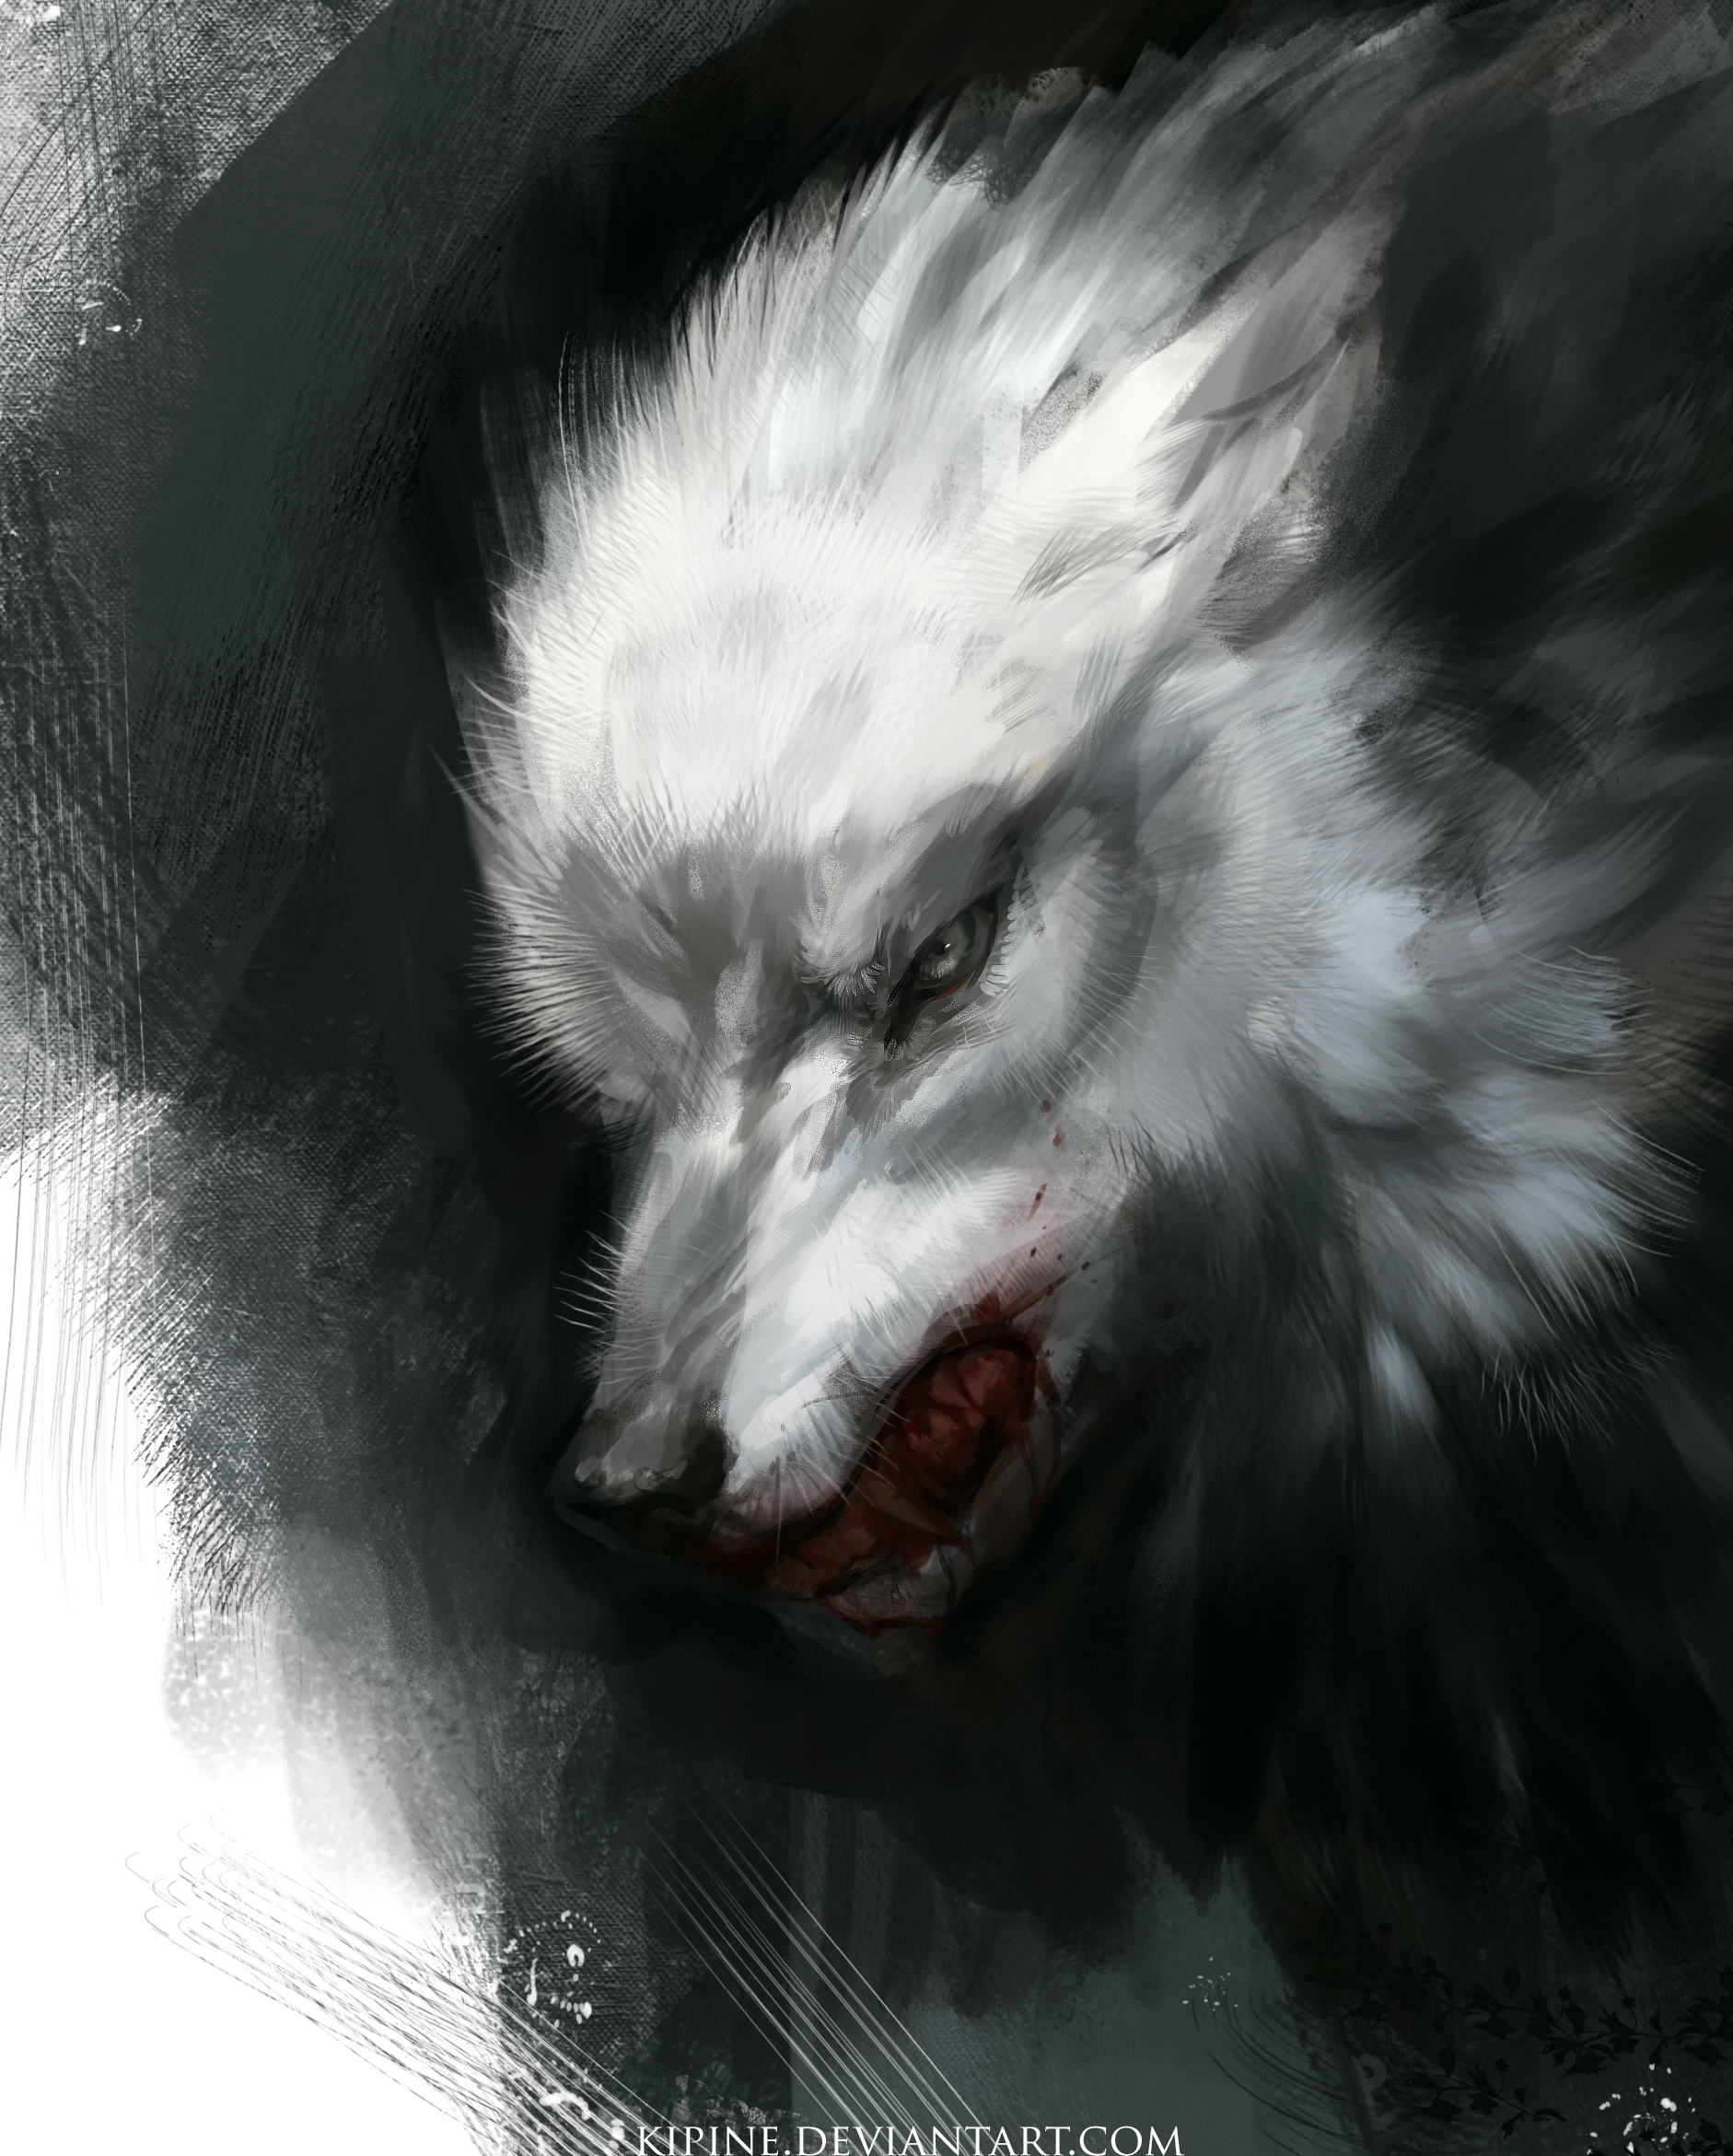 Фото Белый волк с окровавленной пастью, by Kipine